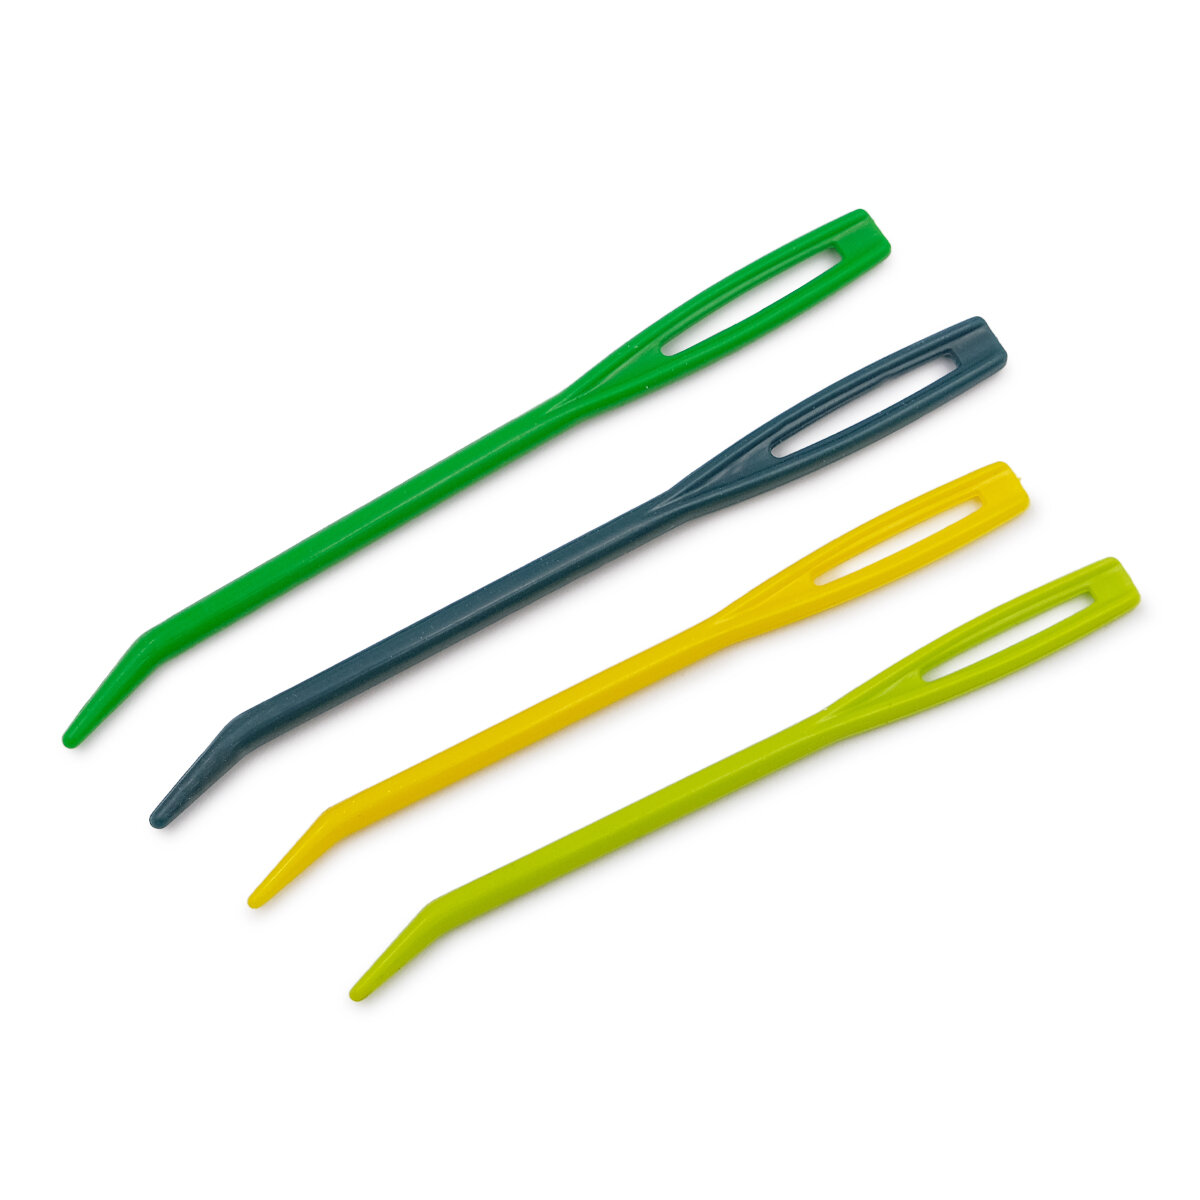 Иглы для пряжи и шерсти ручные, пластик, разноцветные, KnitPro, 10900, 4 шт